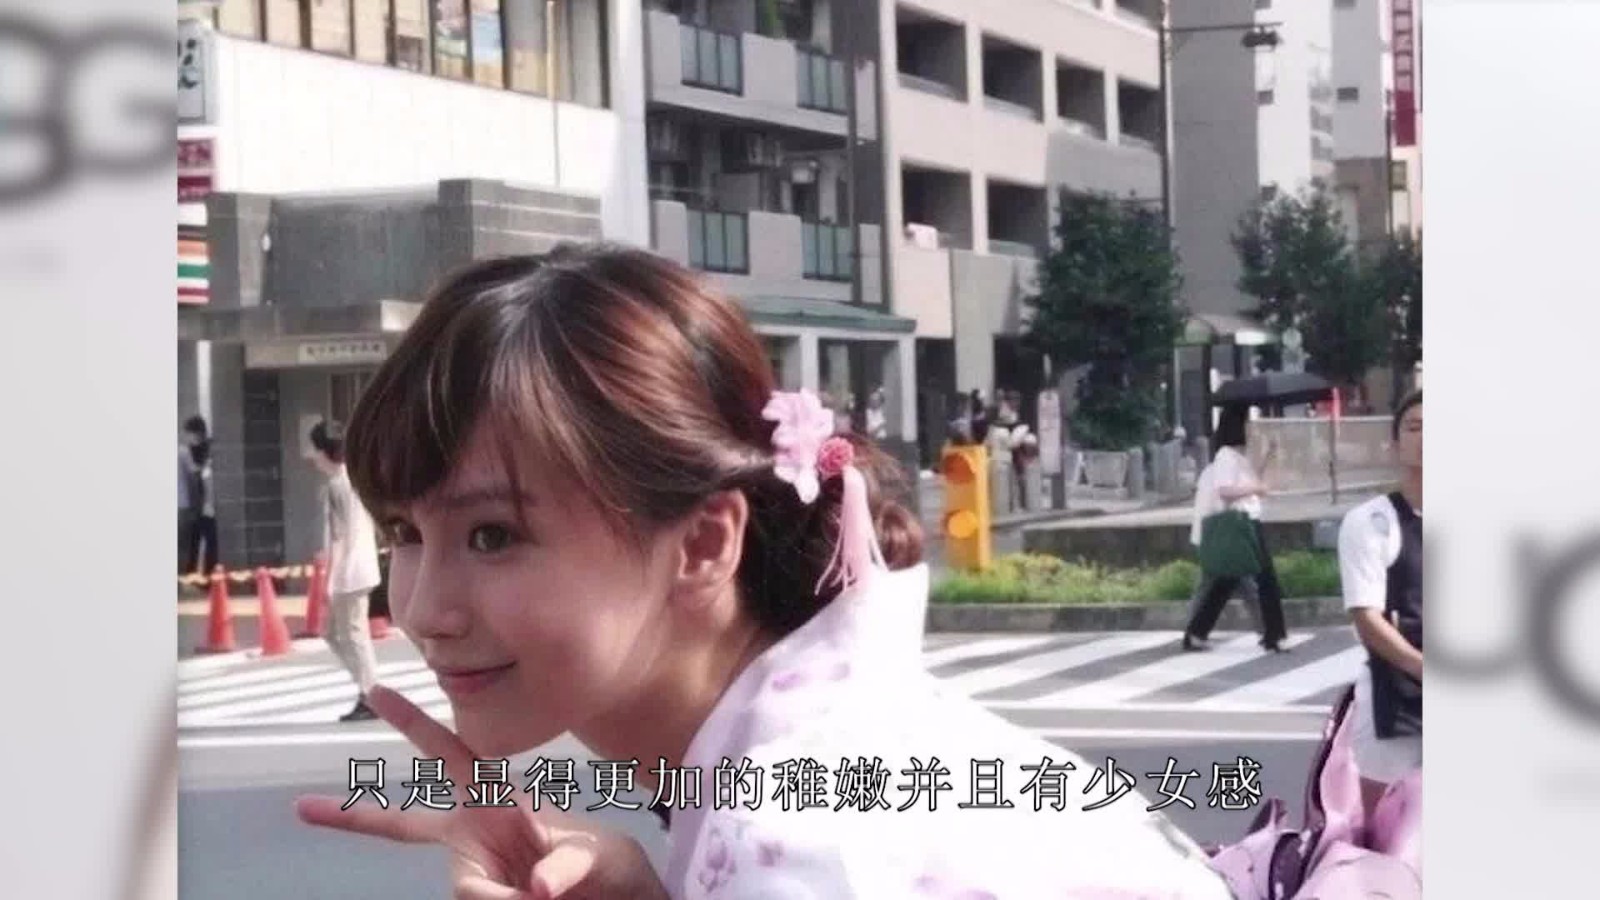 Eighteen-year-old Baby photo exposure, wearing pink kimono, full of girls!